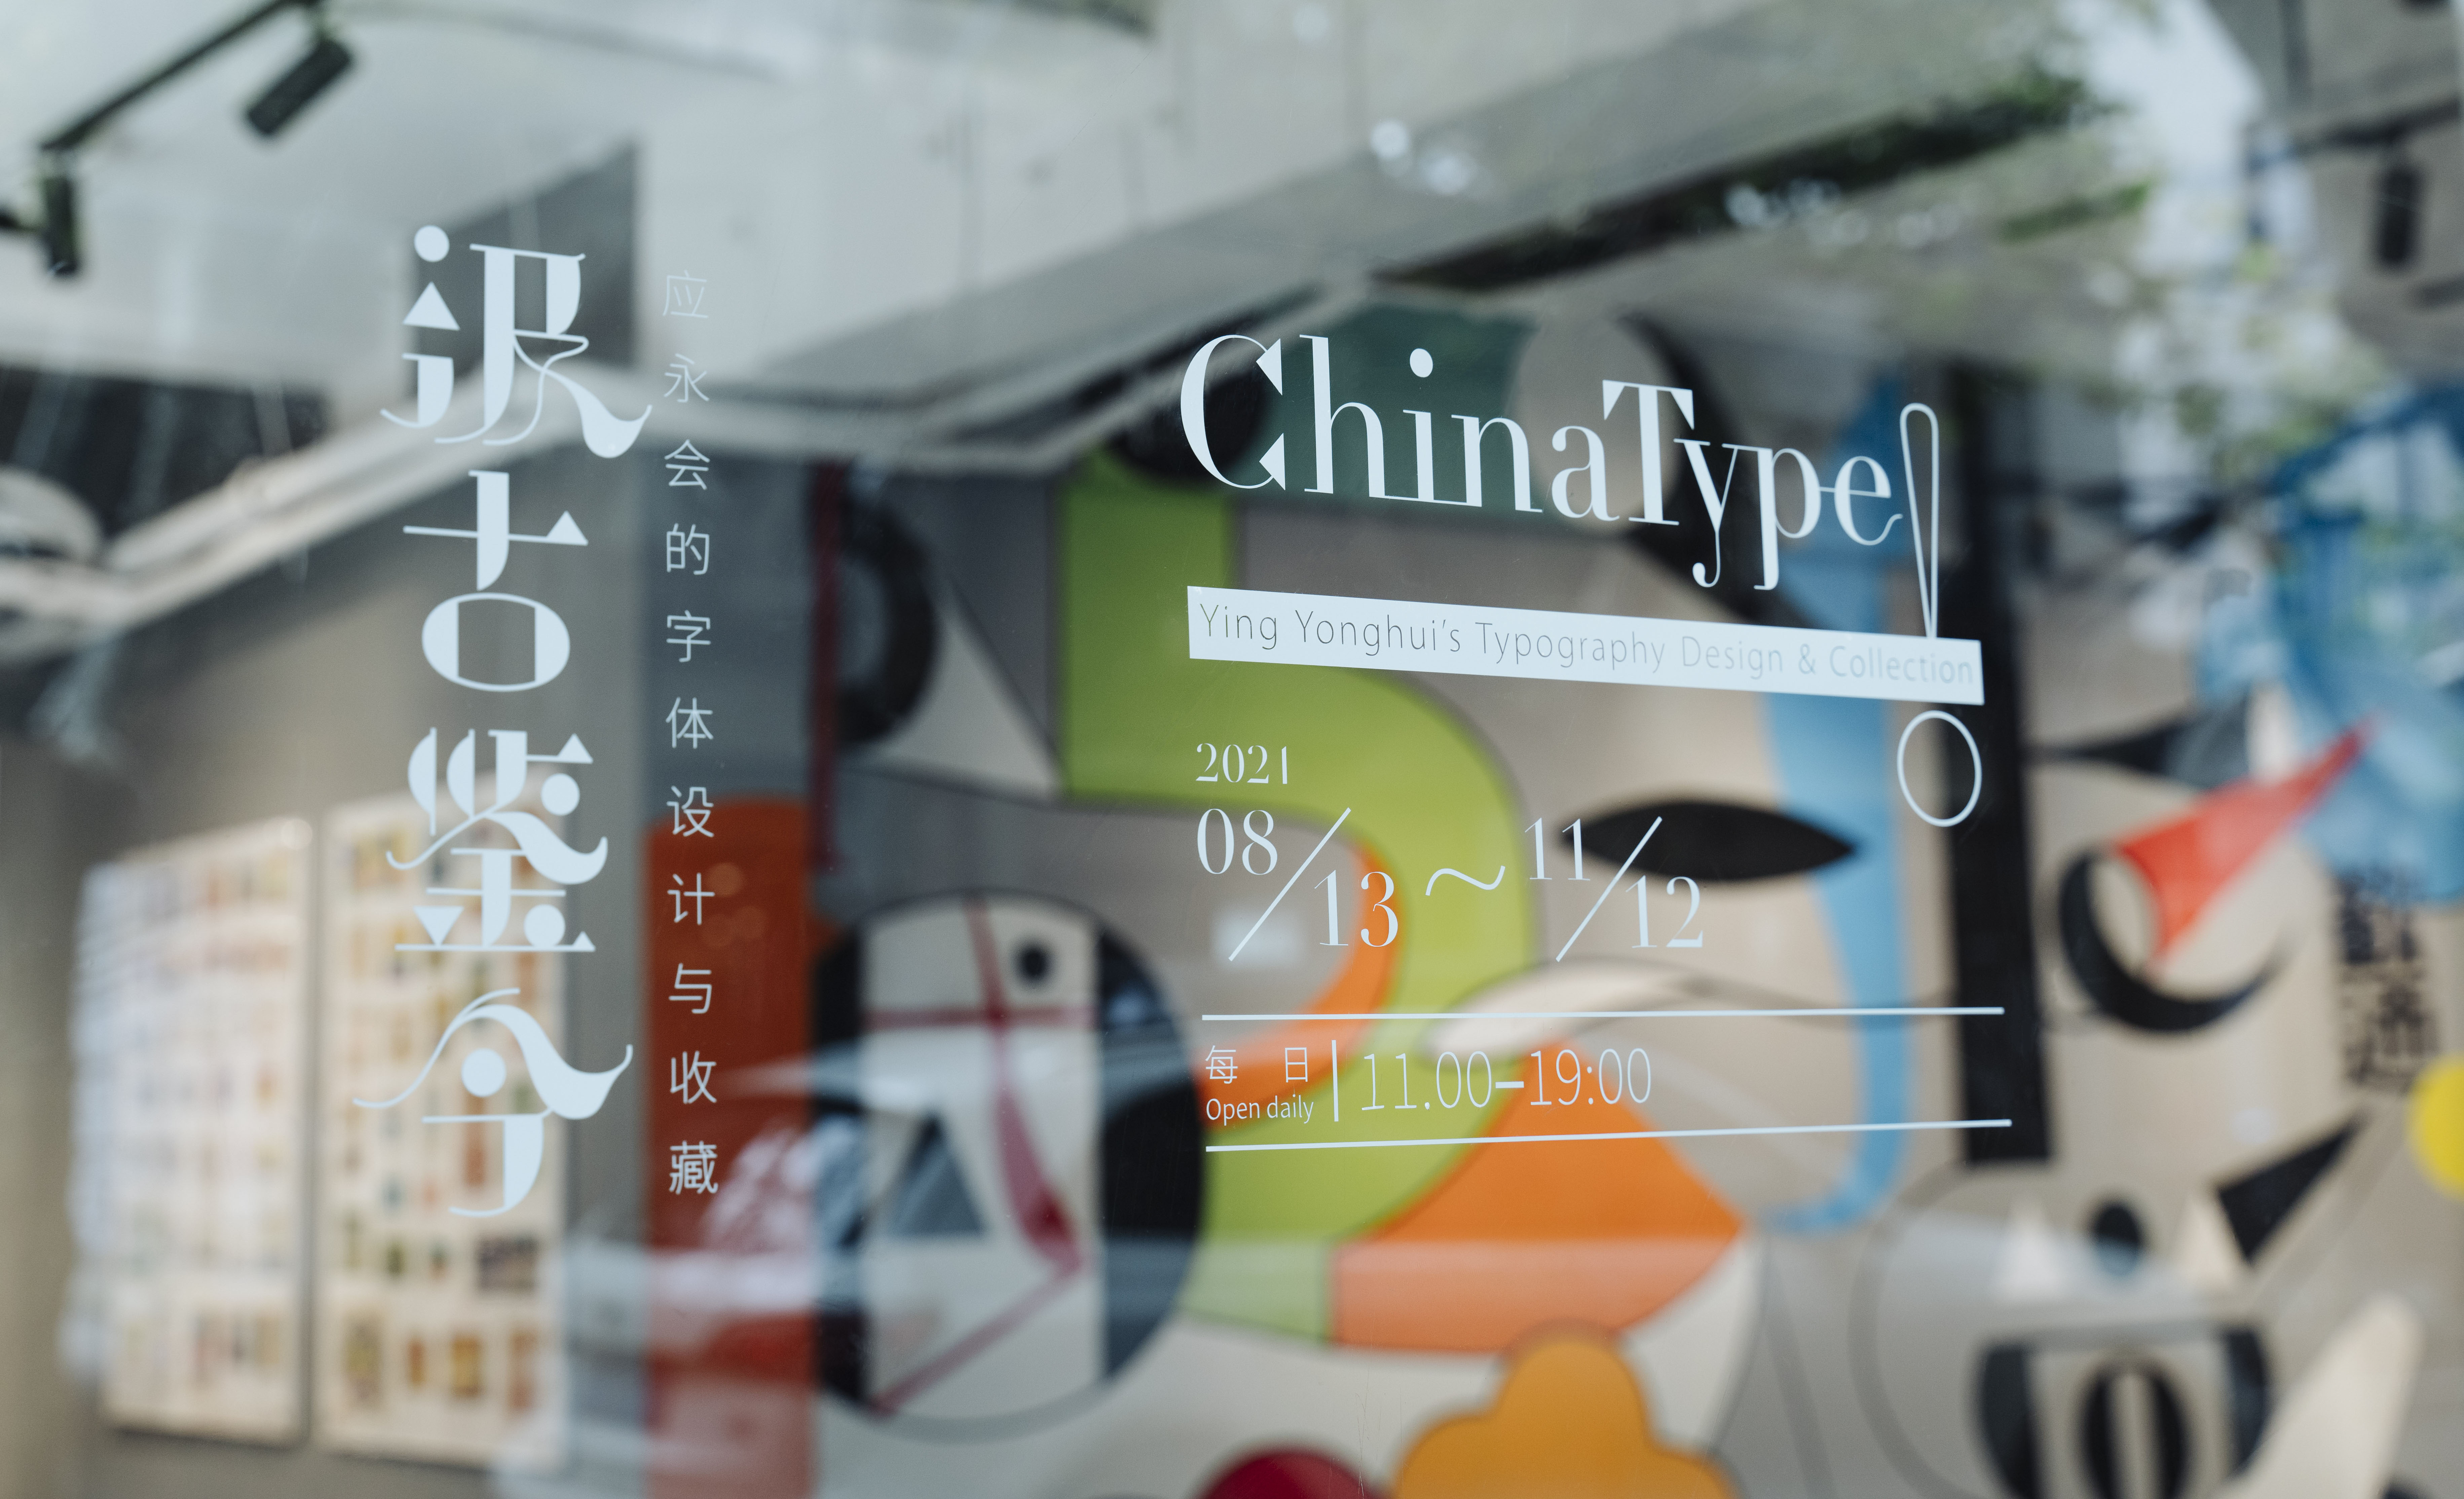 上海Anomaly OPEN举办展览 “汲古鉴今—应永会的字体设计与收藏”